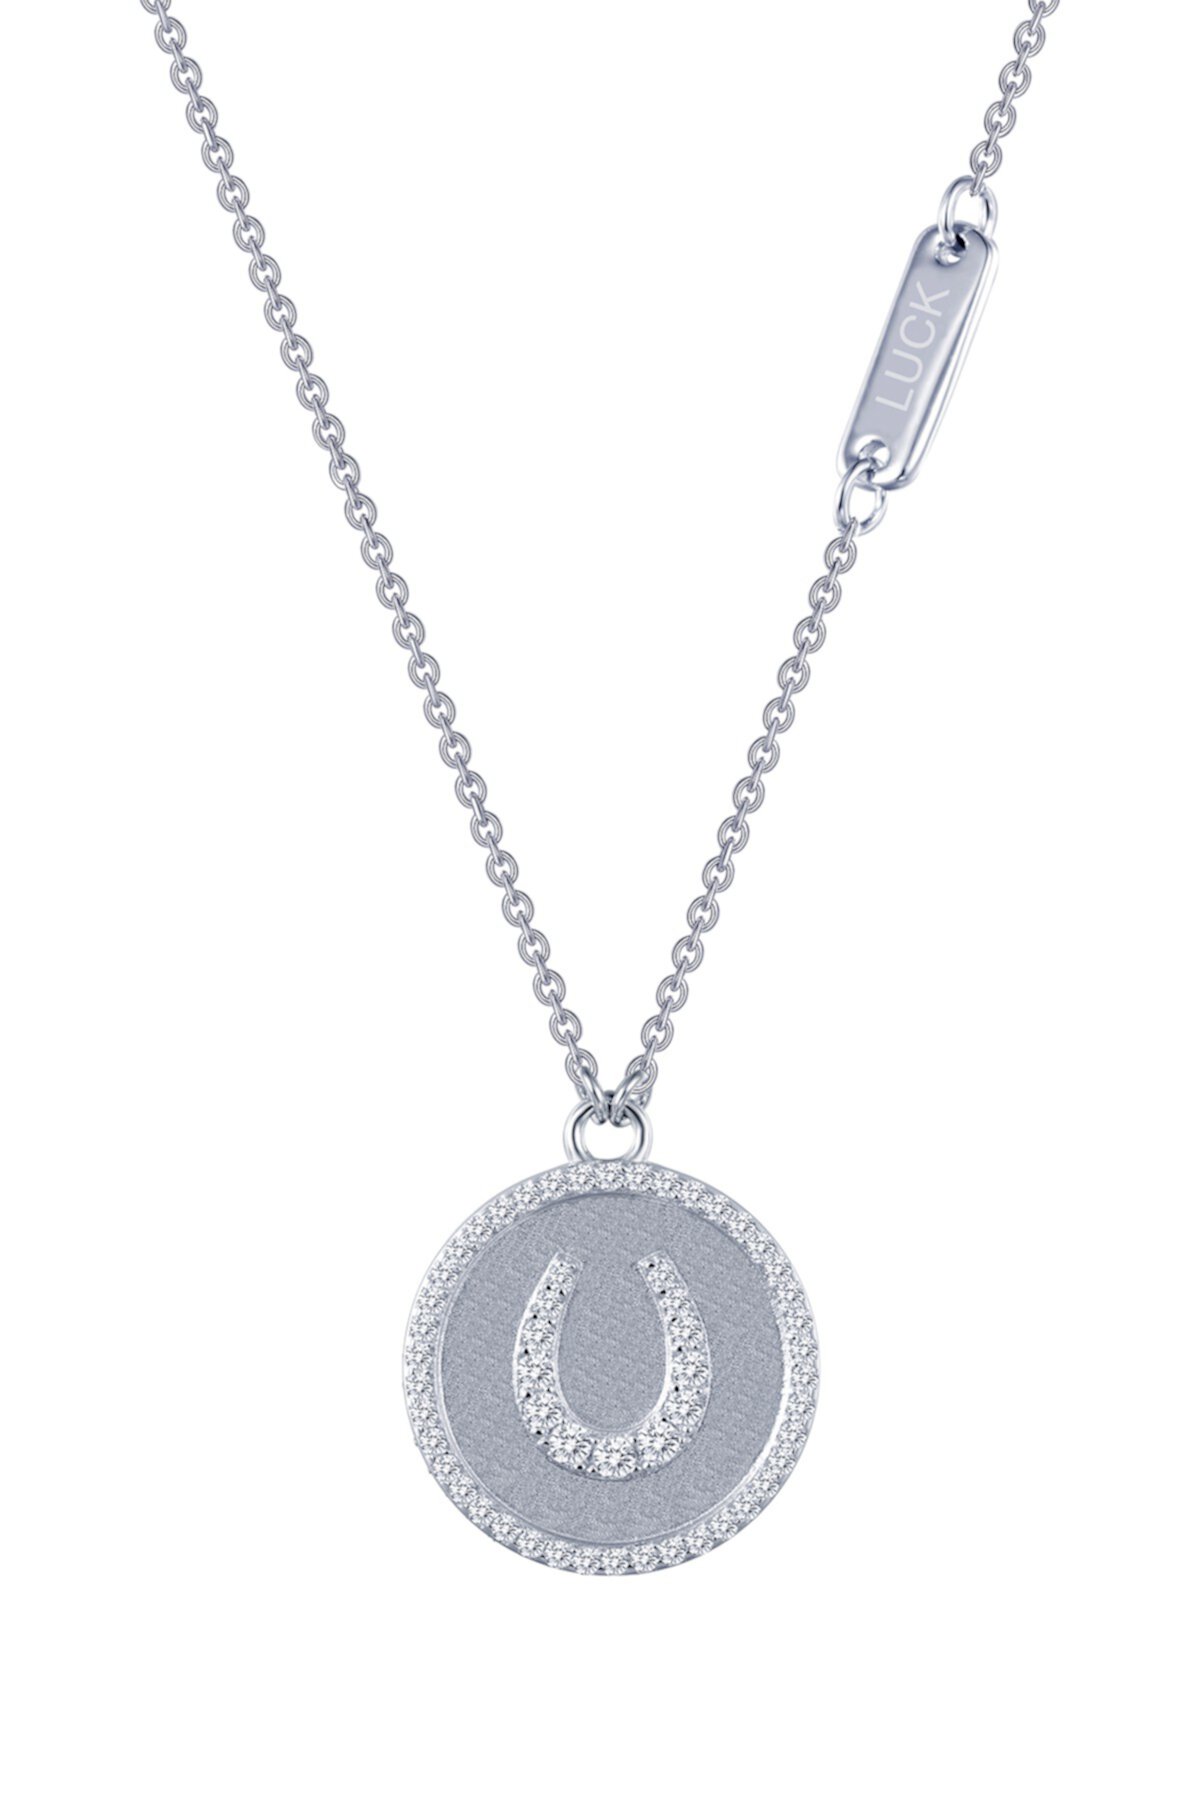 Стерлинговое серебро с платиновым покрытием, ожерелье с подвеской в виде подковы с микропаве, имитацией бриллианта, сентиментальности LaFonn